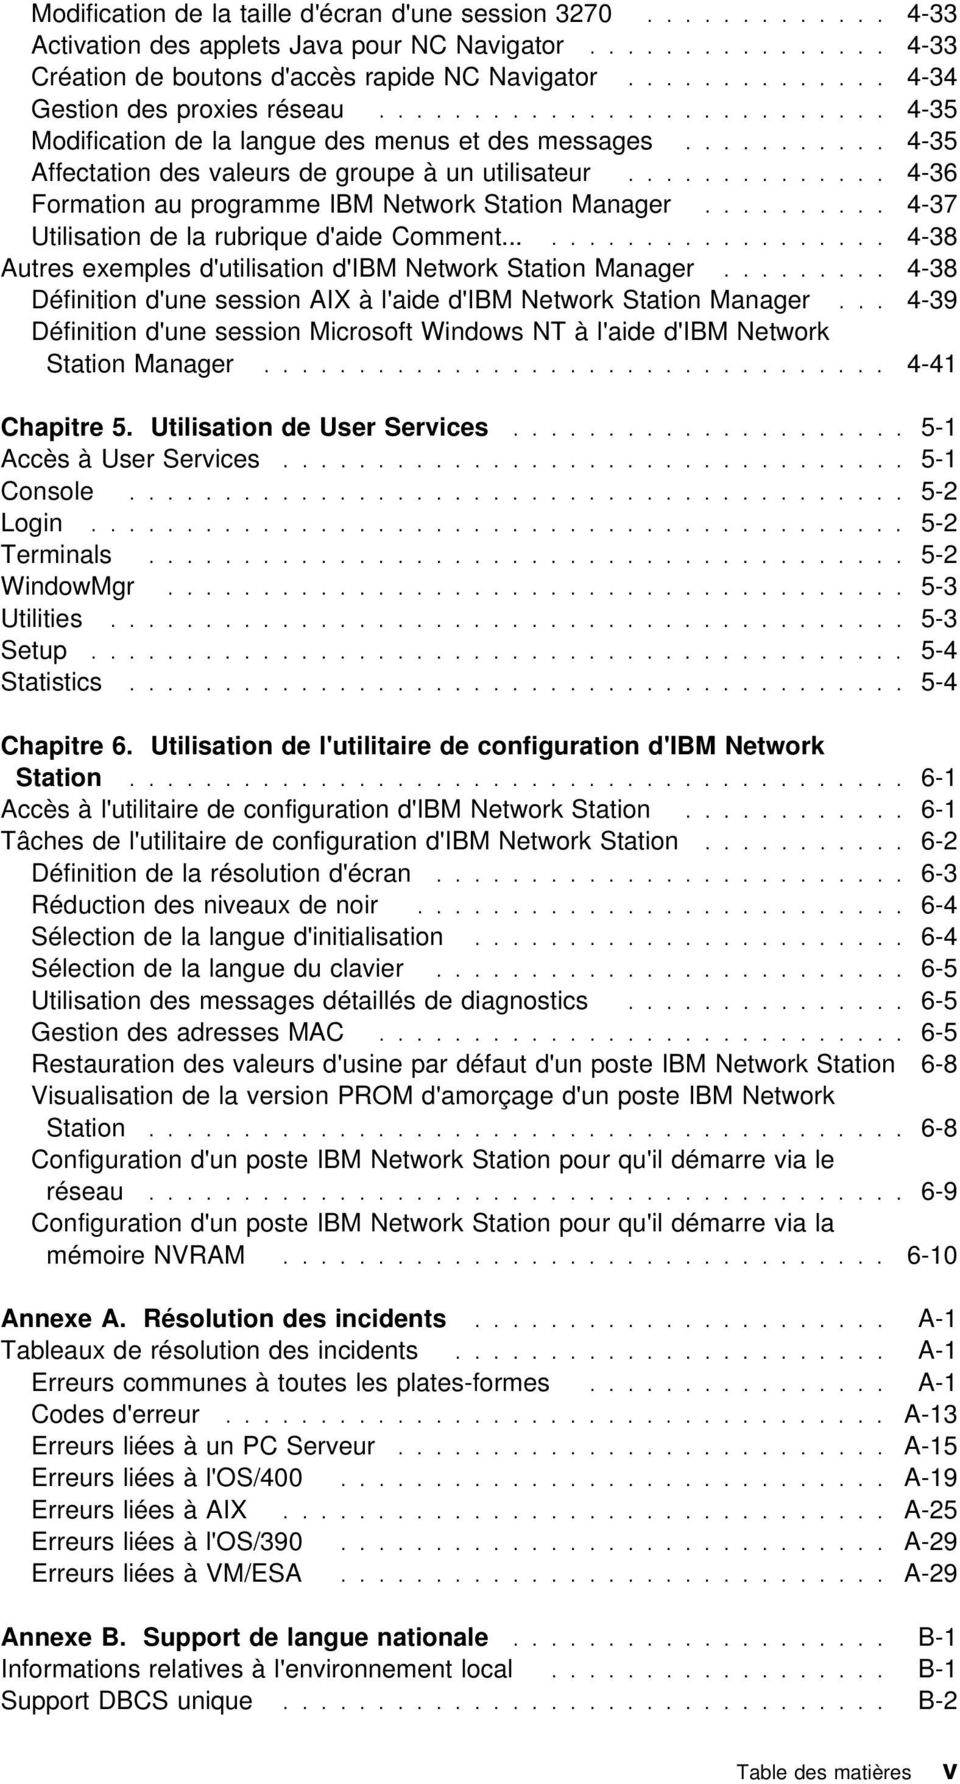 ............. 4-36 Formation au programme IBM Network Station Manager.......... 4-37 Utilisation de la rubrique d'aide Comment..................... 4-38 Autres exemples d'utilisation d'ibm Network Station Manager.